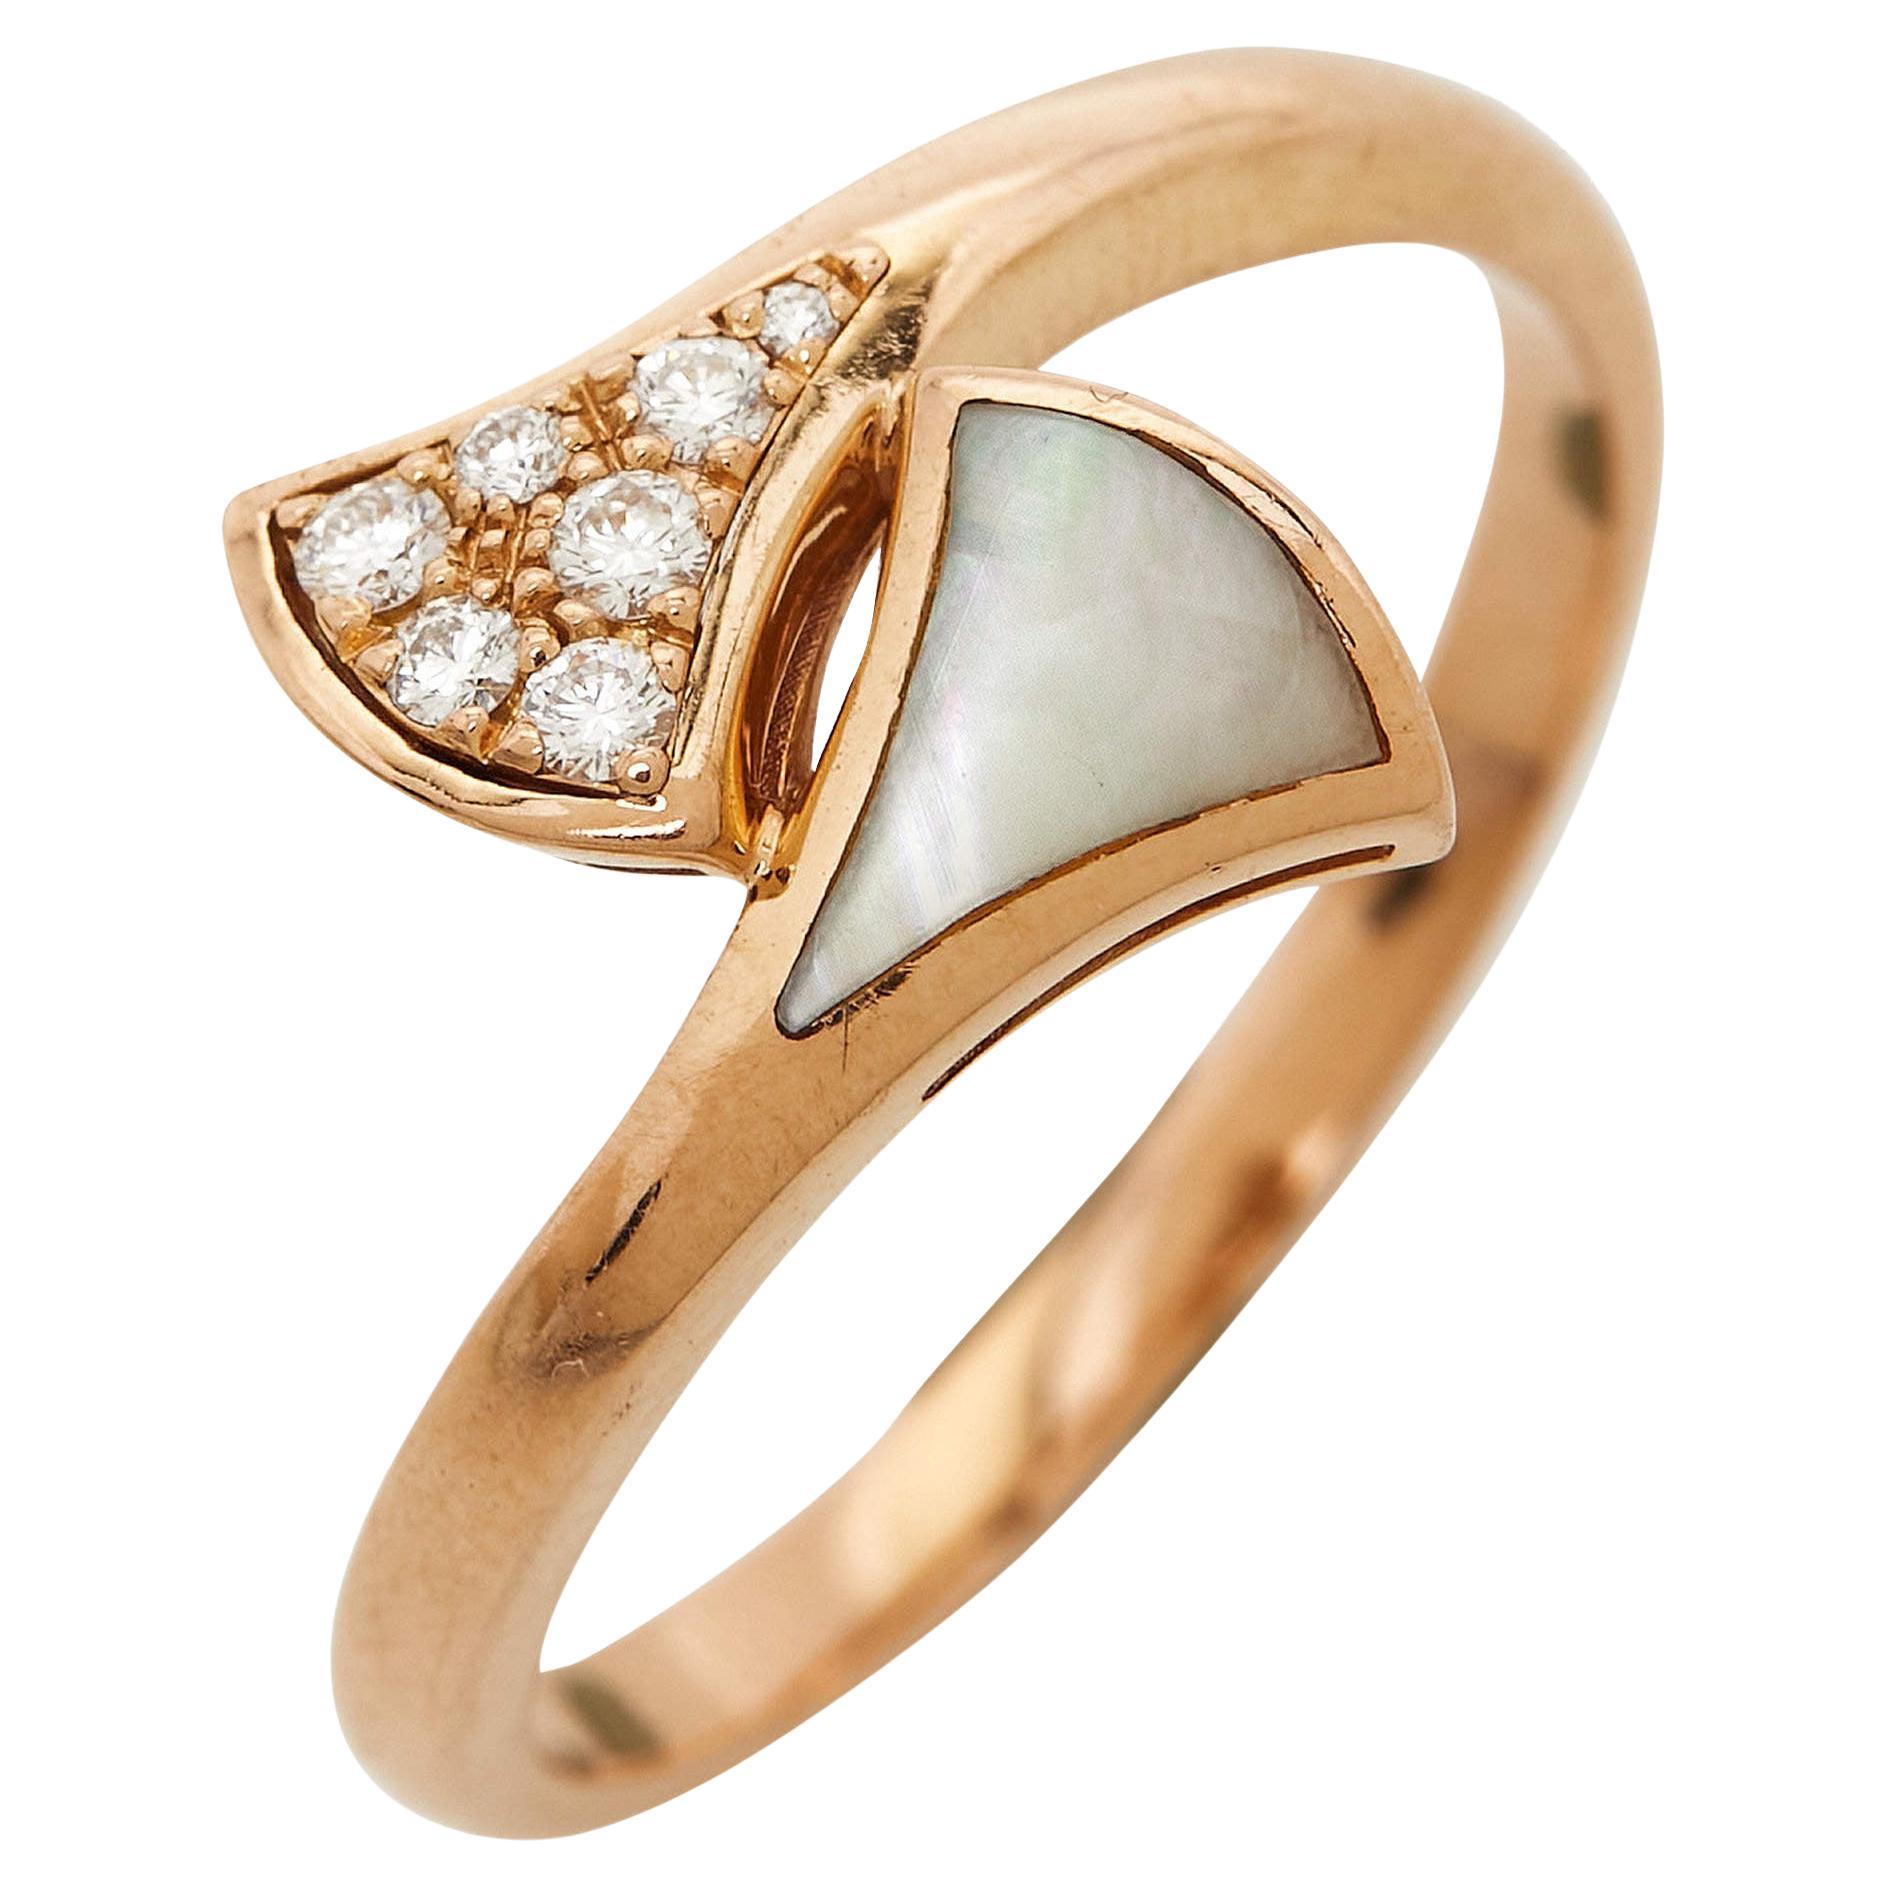 Bvlgari Divas' Dream, bague en or rose 18 carats avec nacre et diamants, taille 59